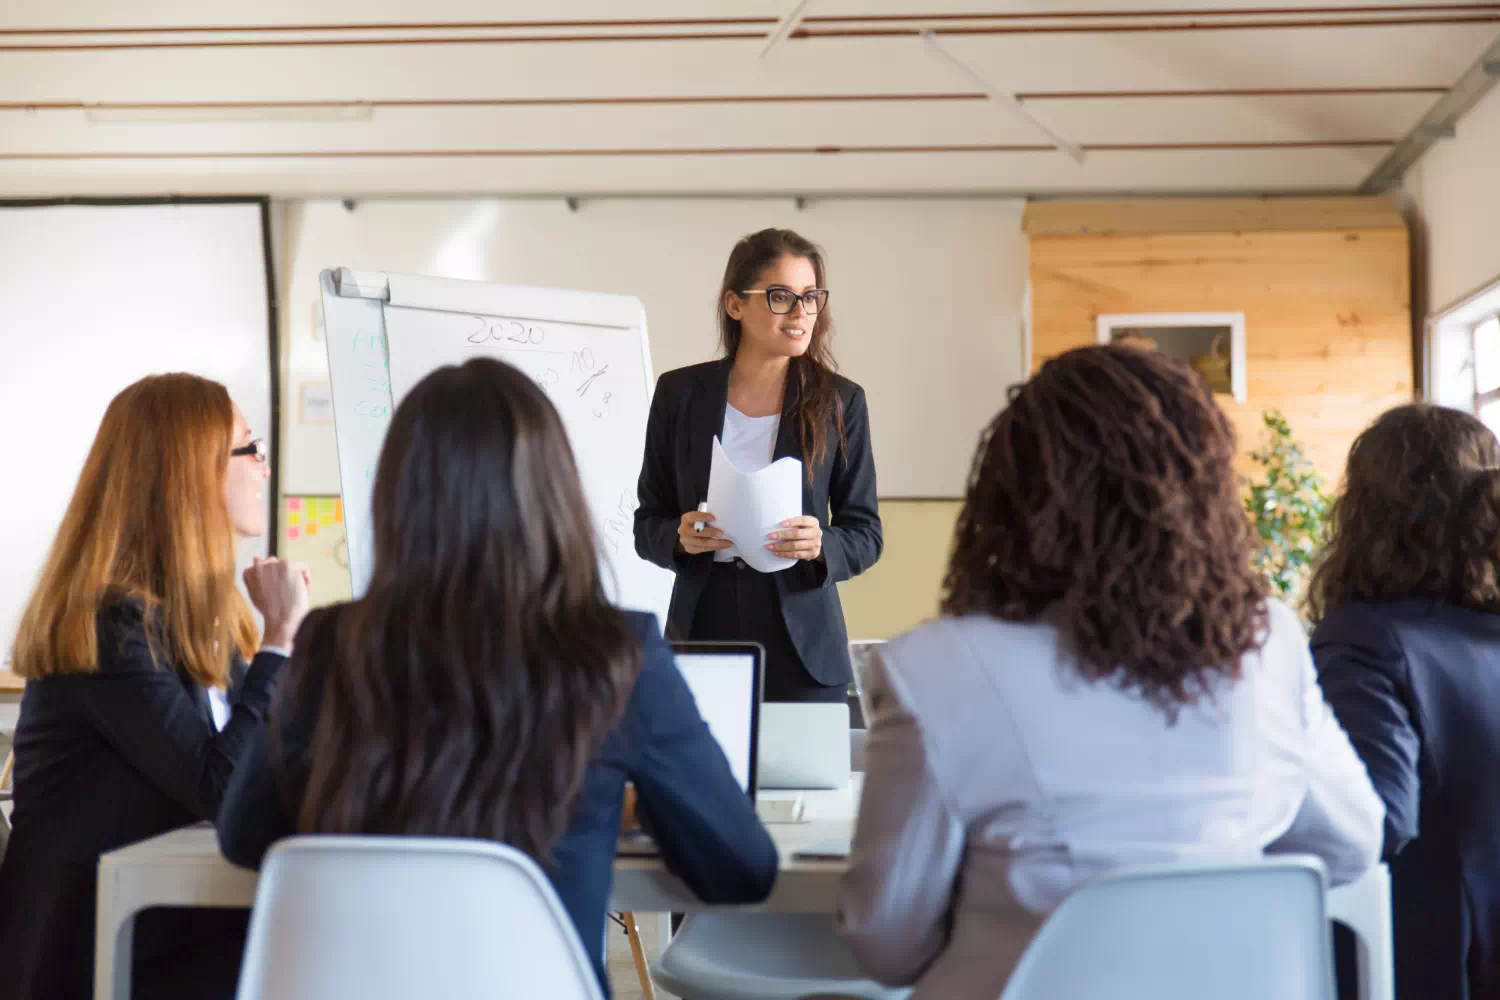 Manager donna autorevole si rivolge a dipendenti durante meeting, una delle competenze manageriali più importanti